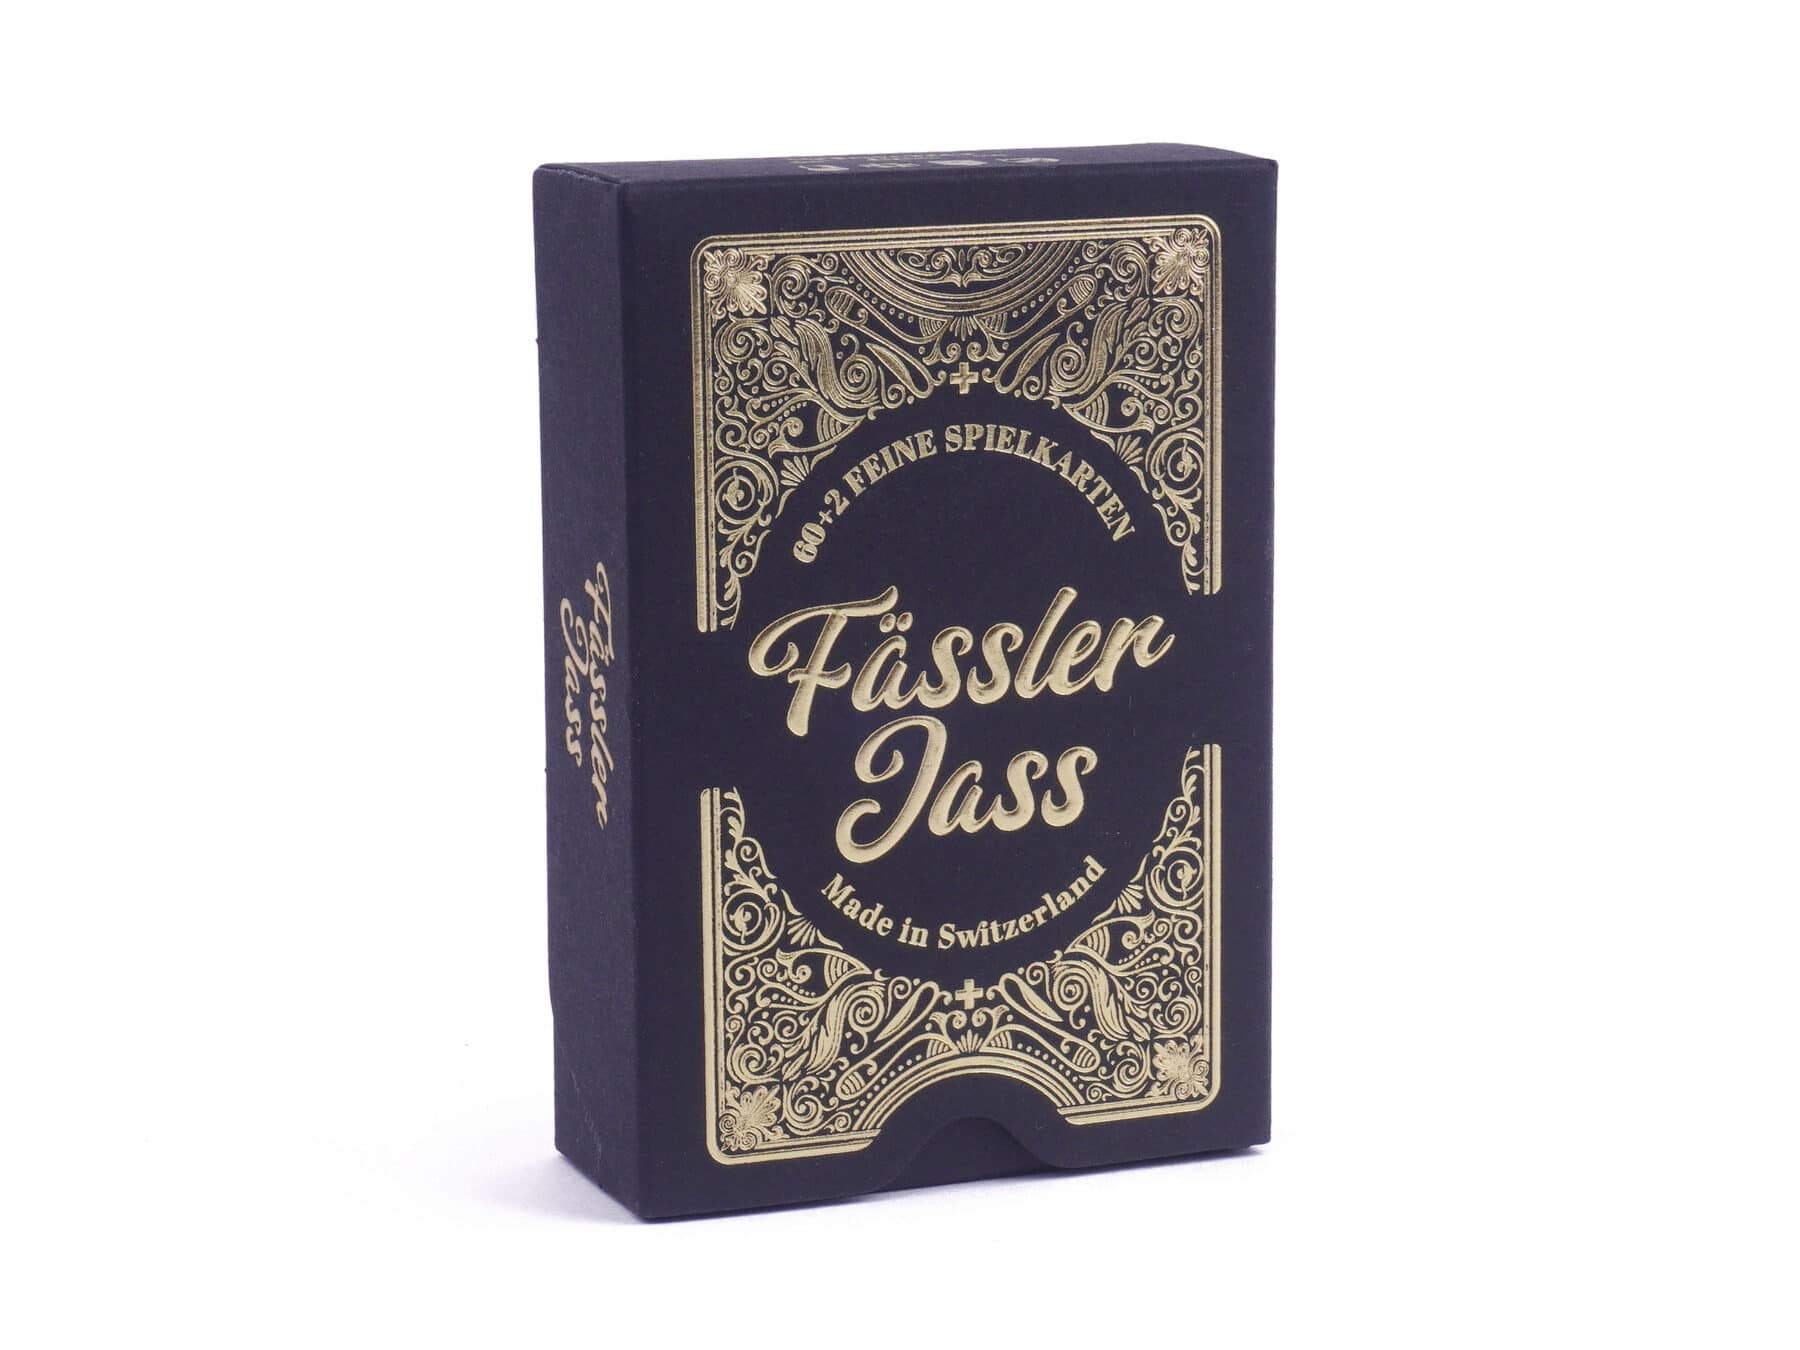 Faessler Jass Deluxe Gold swiss made